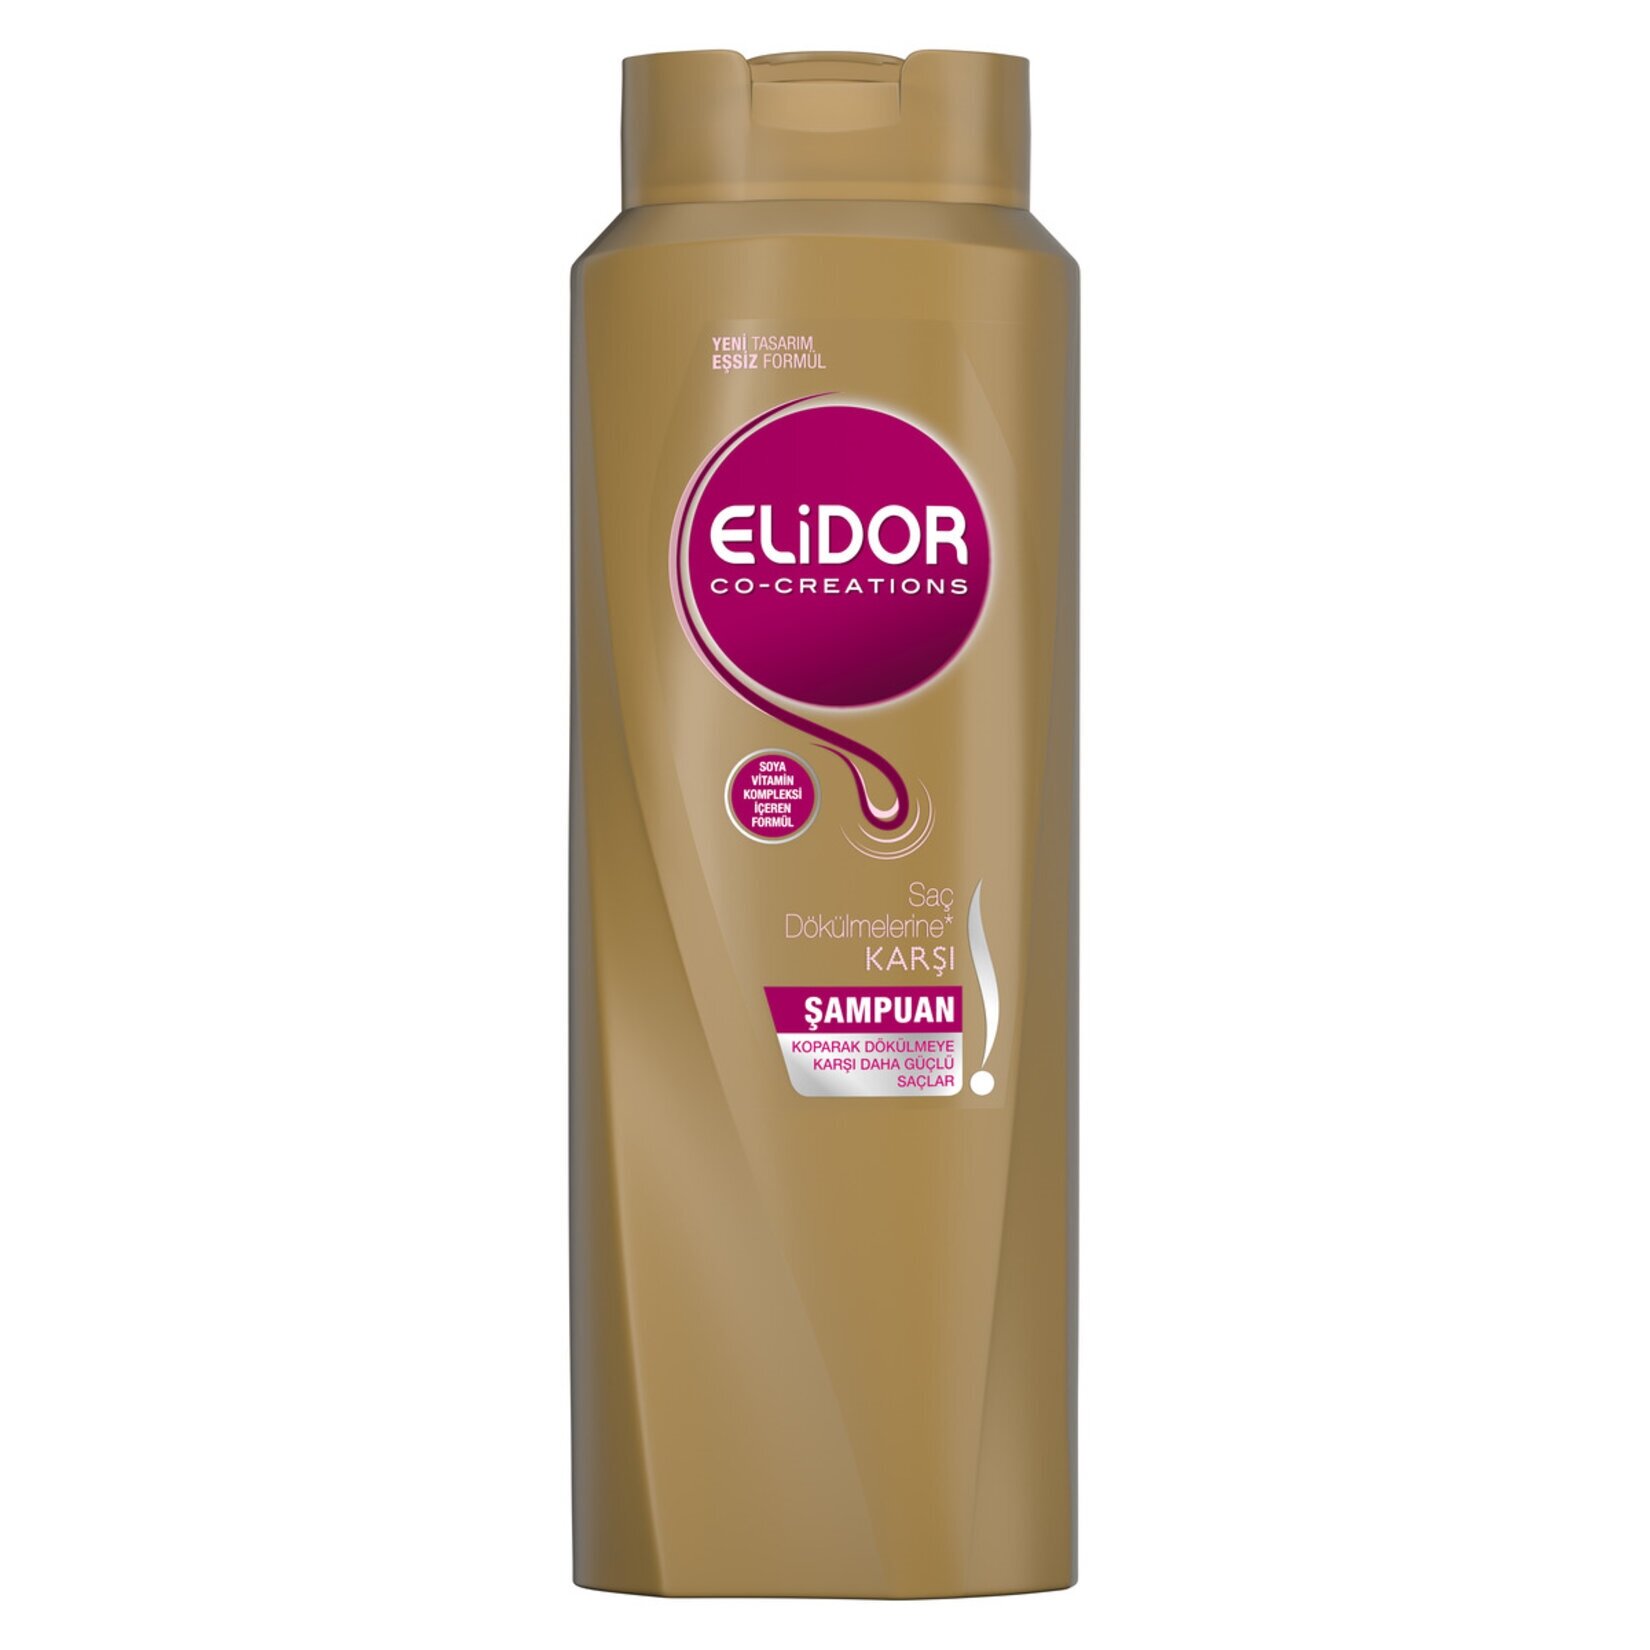 resm Elidor Şampuan Saç Dökülmesine Karşı 500 ml